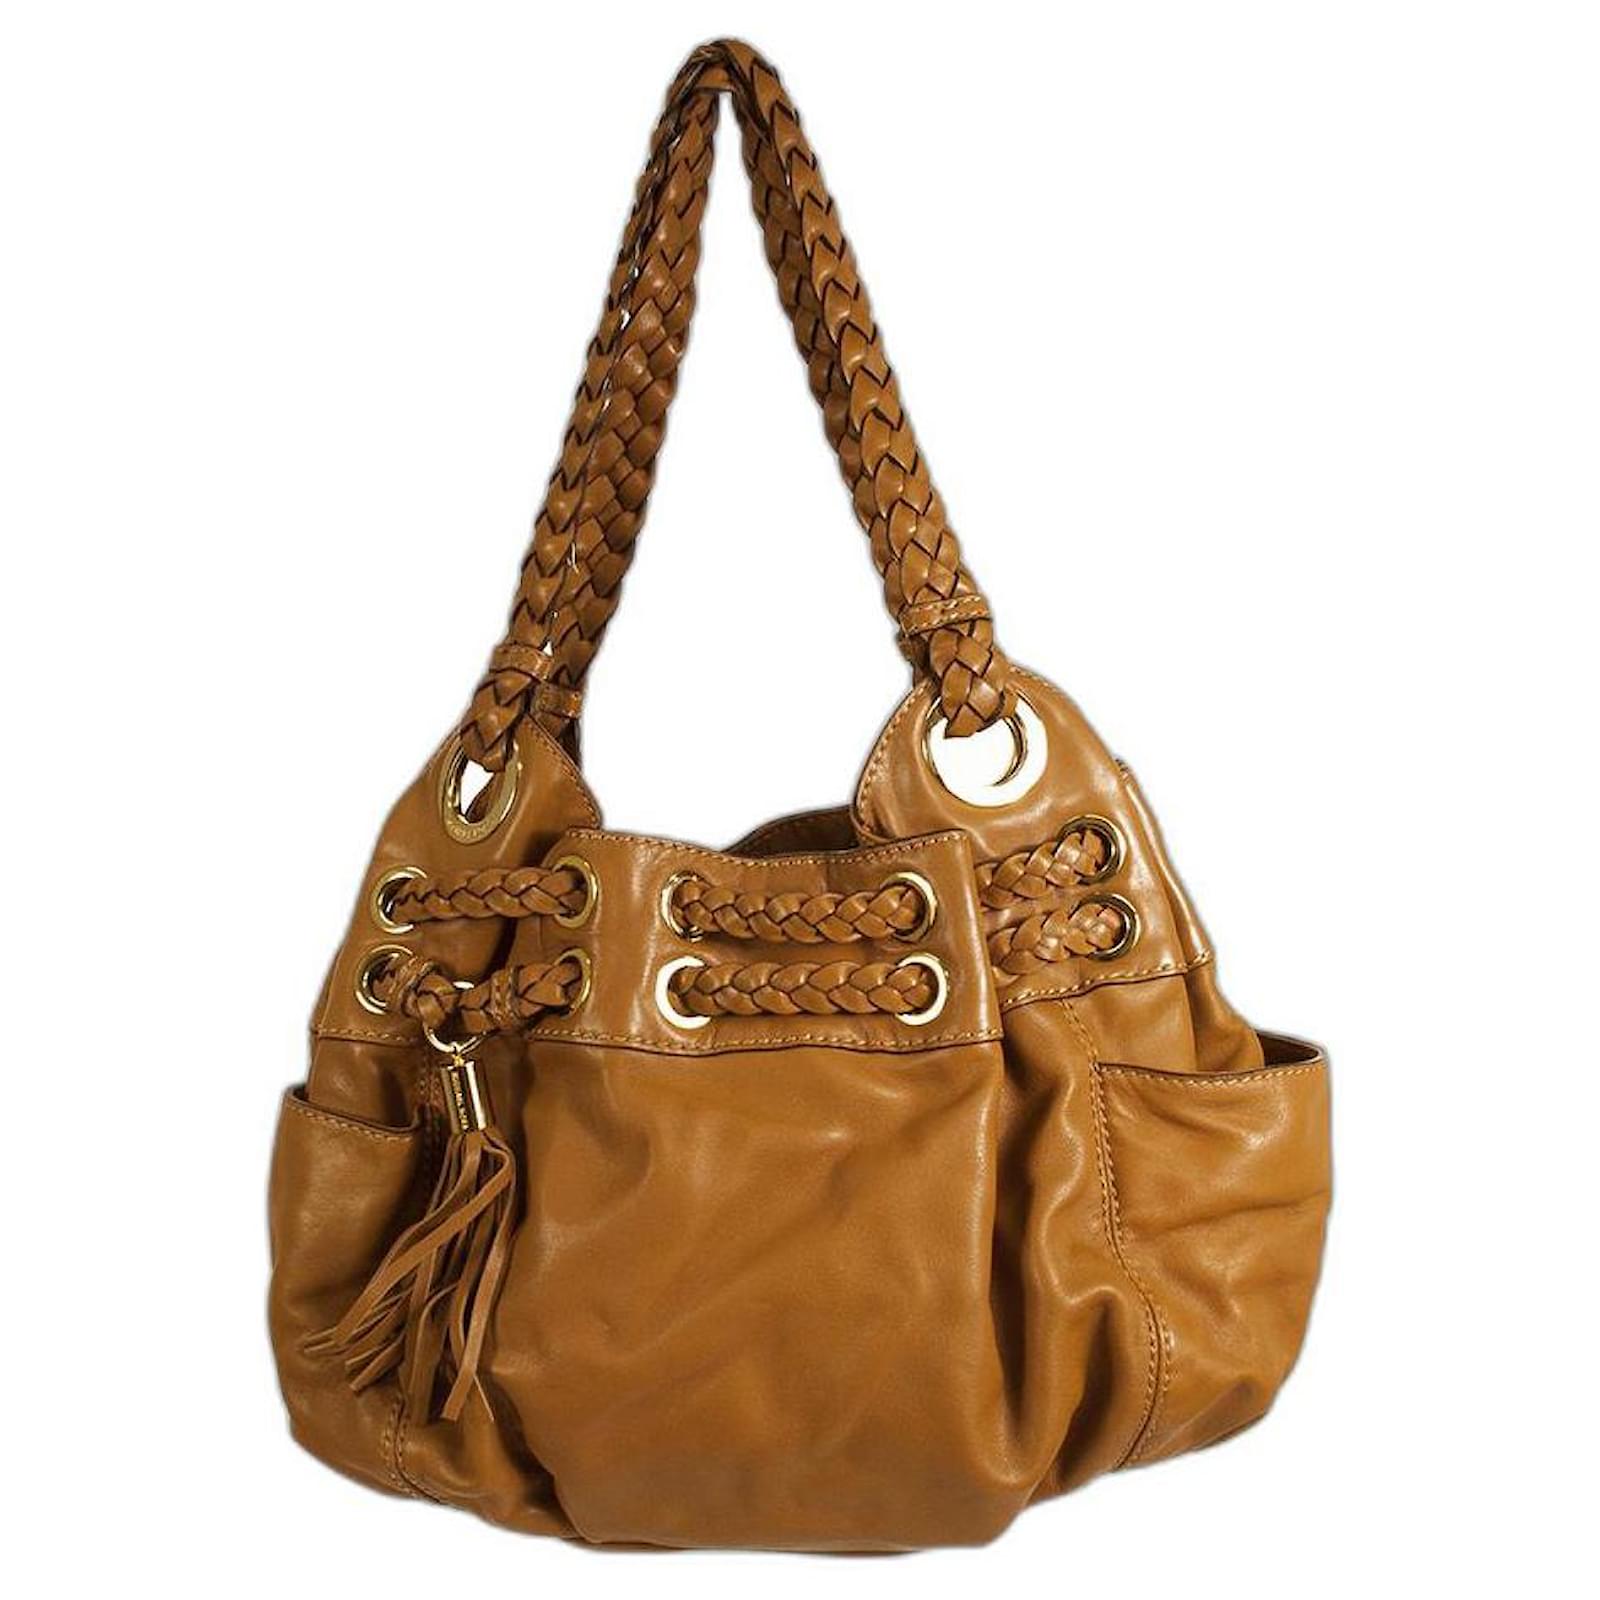 Michael Kors Jamesport Bag brown Leather Shoulder Bag